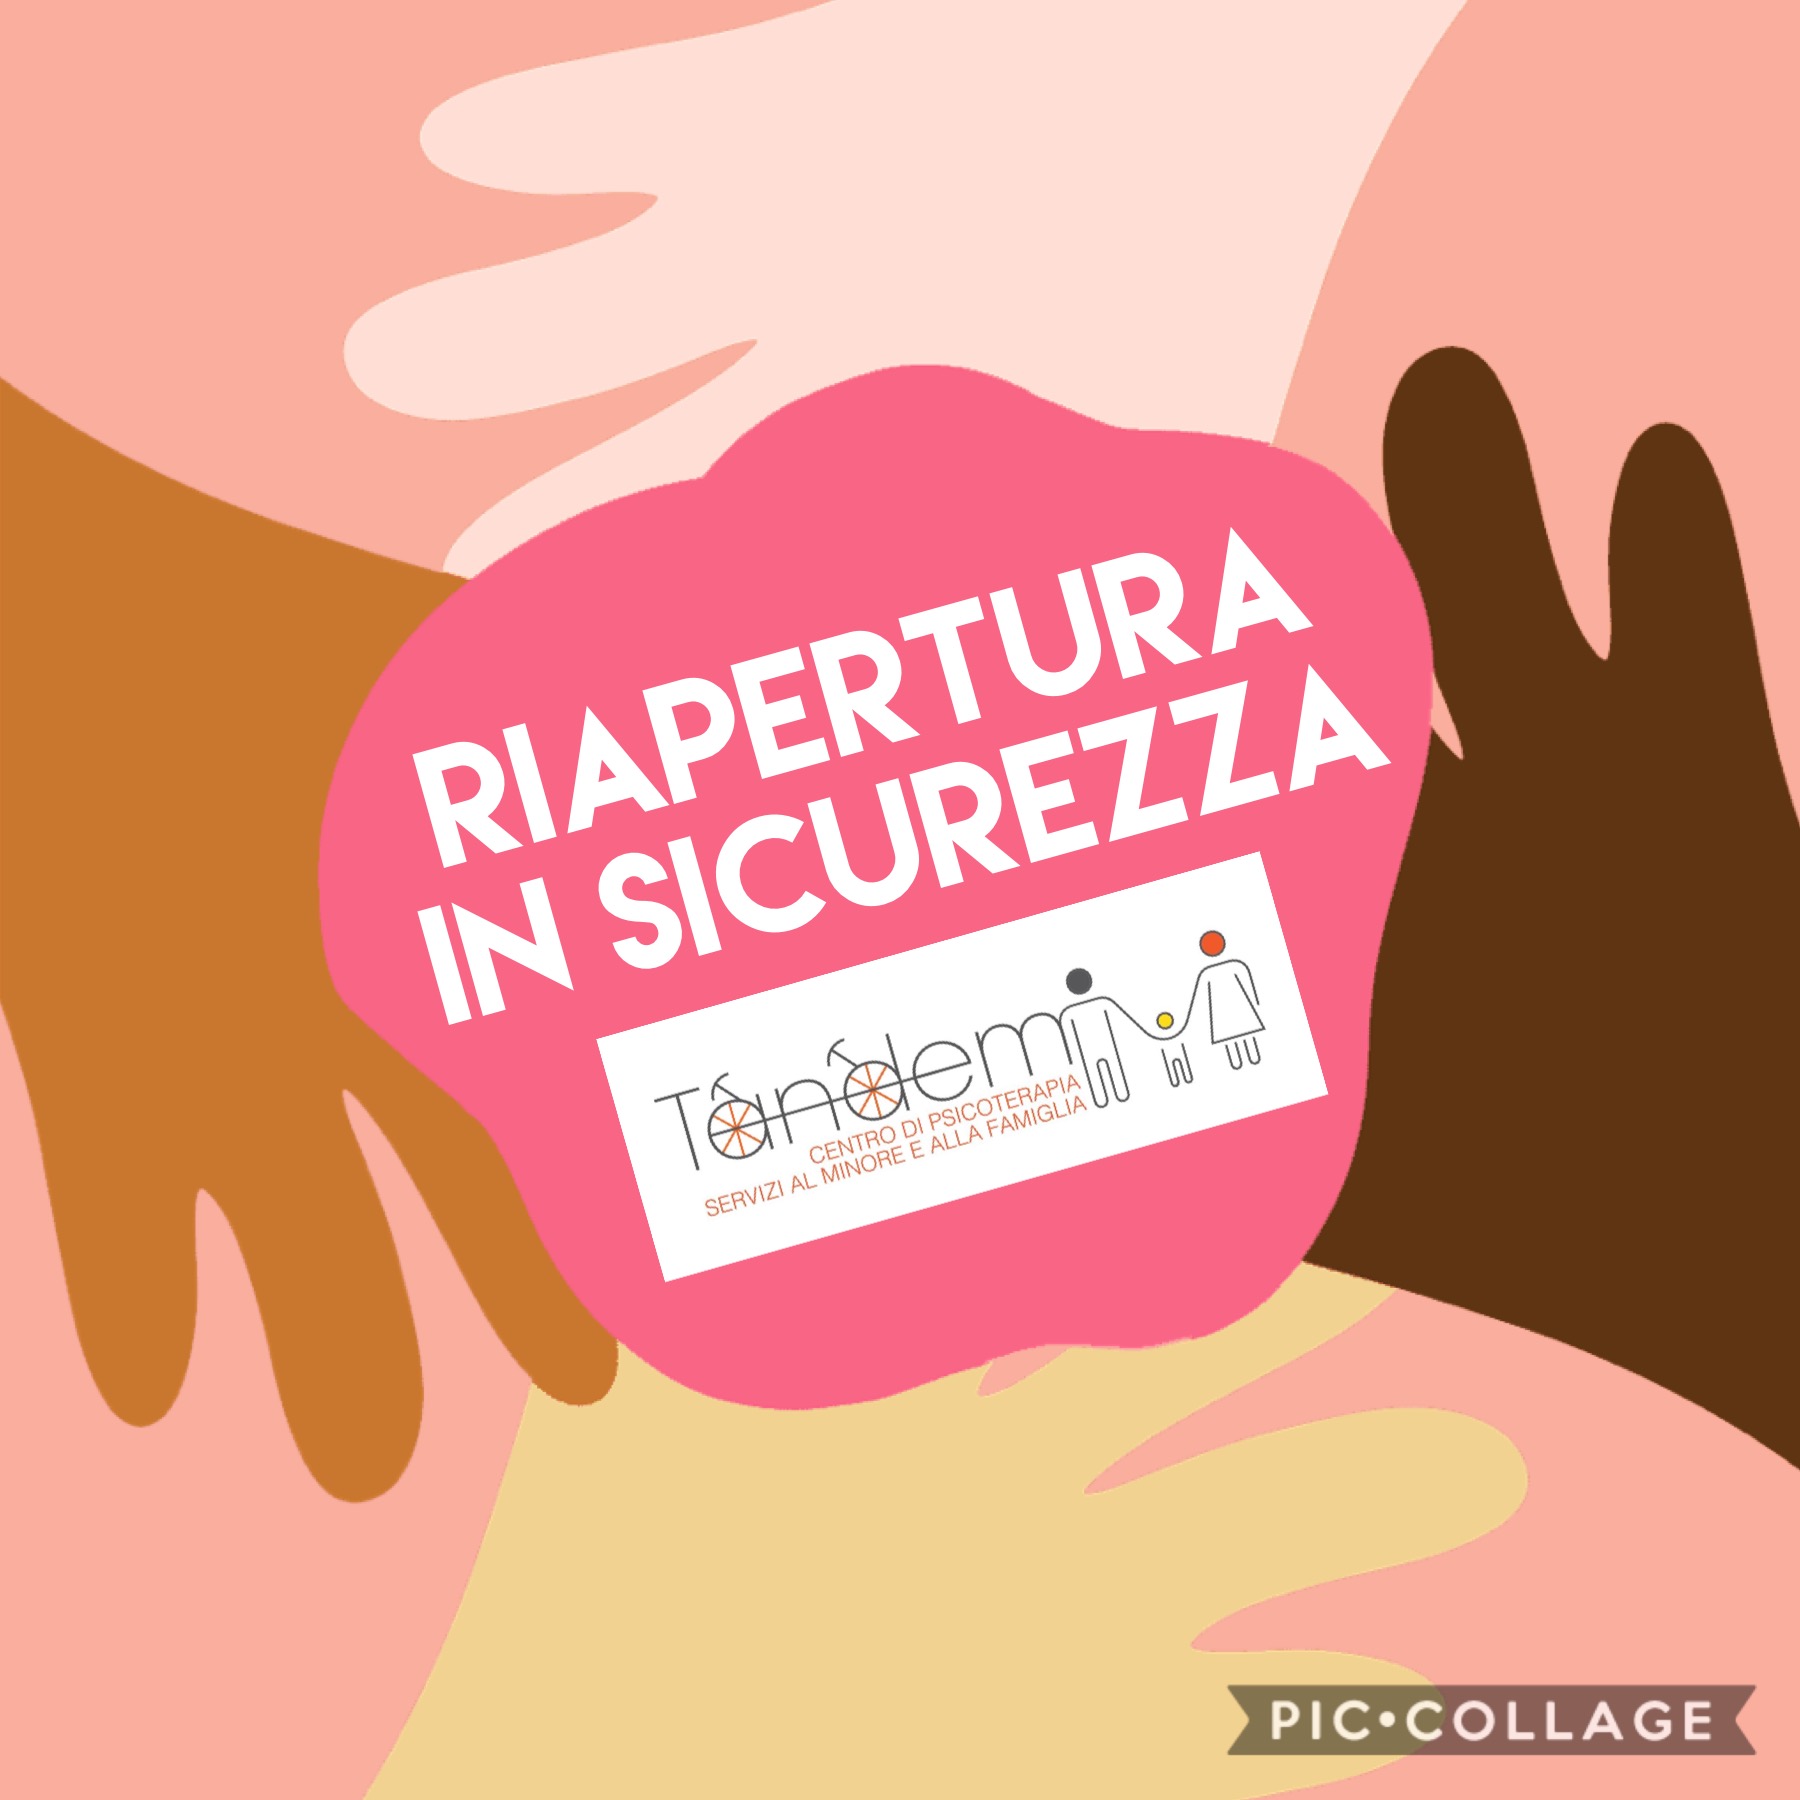 NEWS: RIAPERTURA IN SICUREZZA